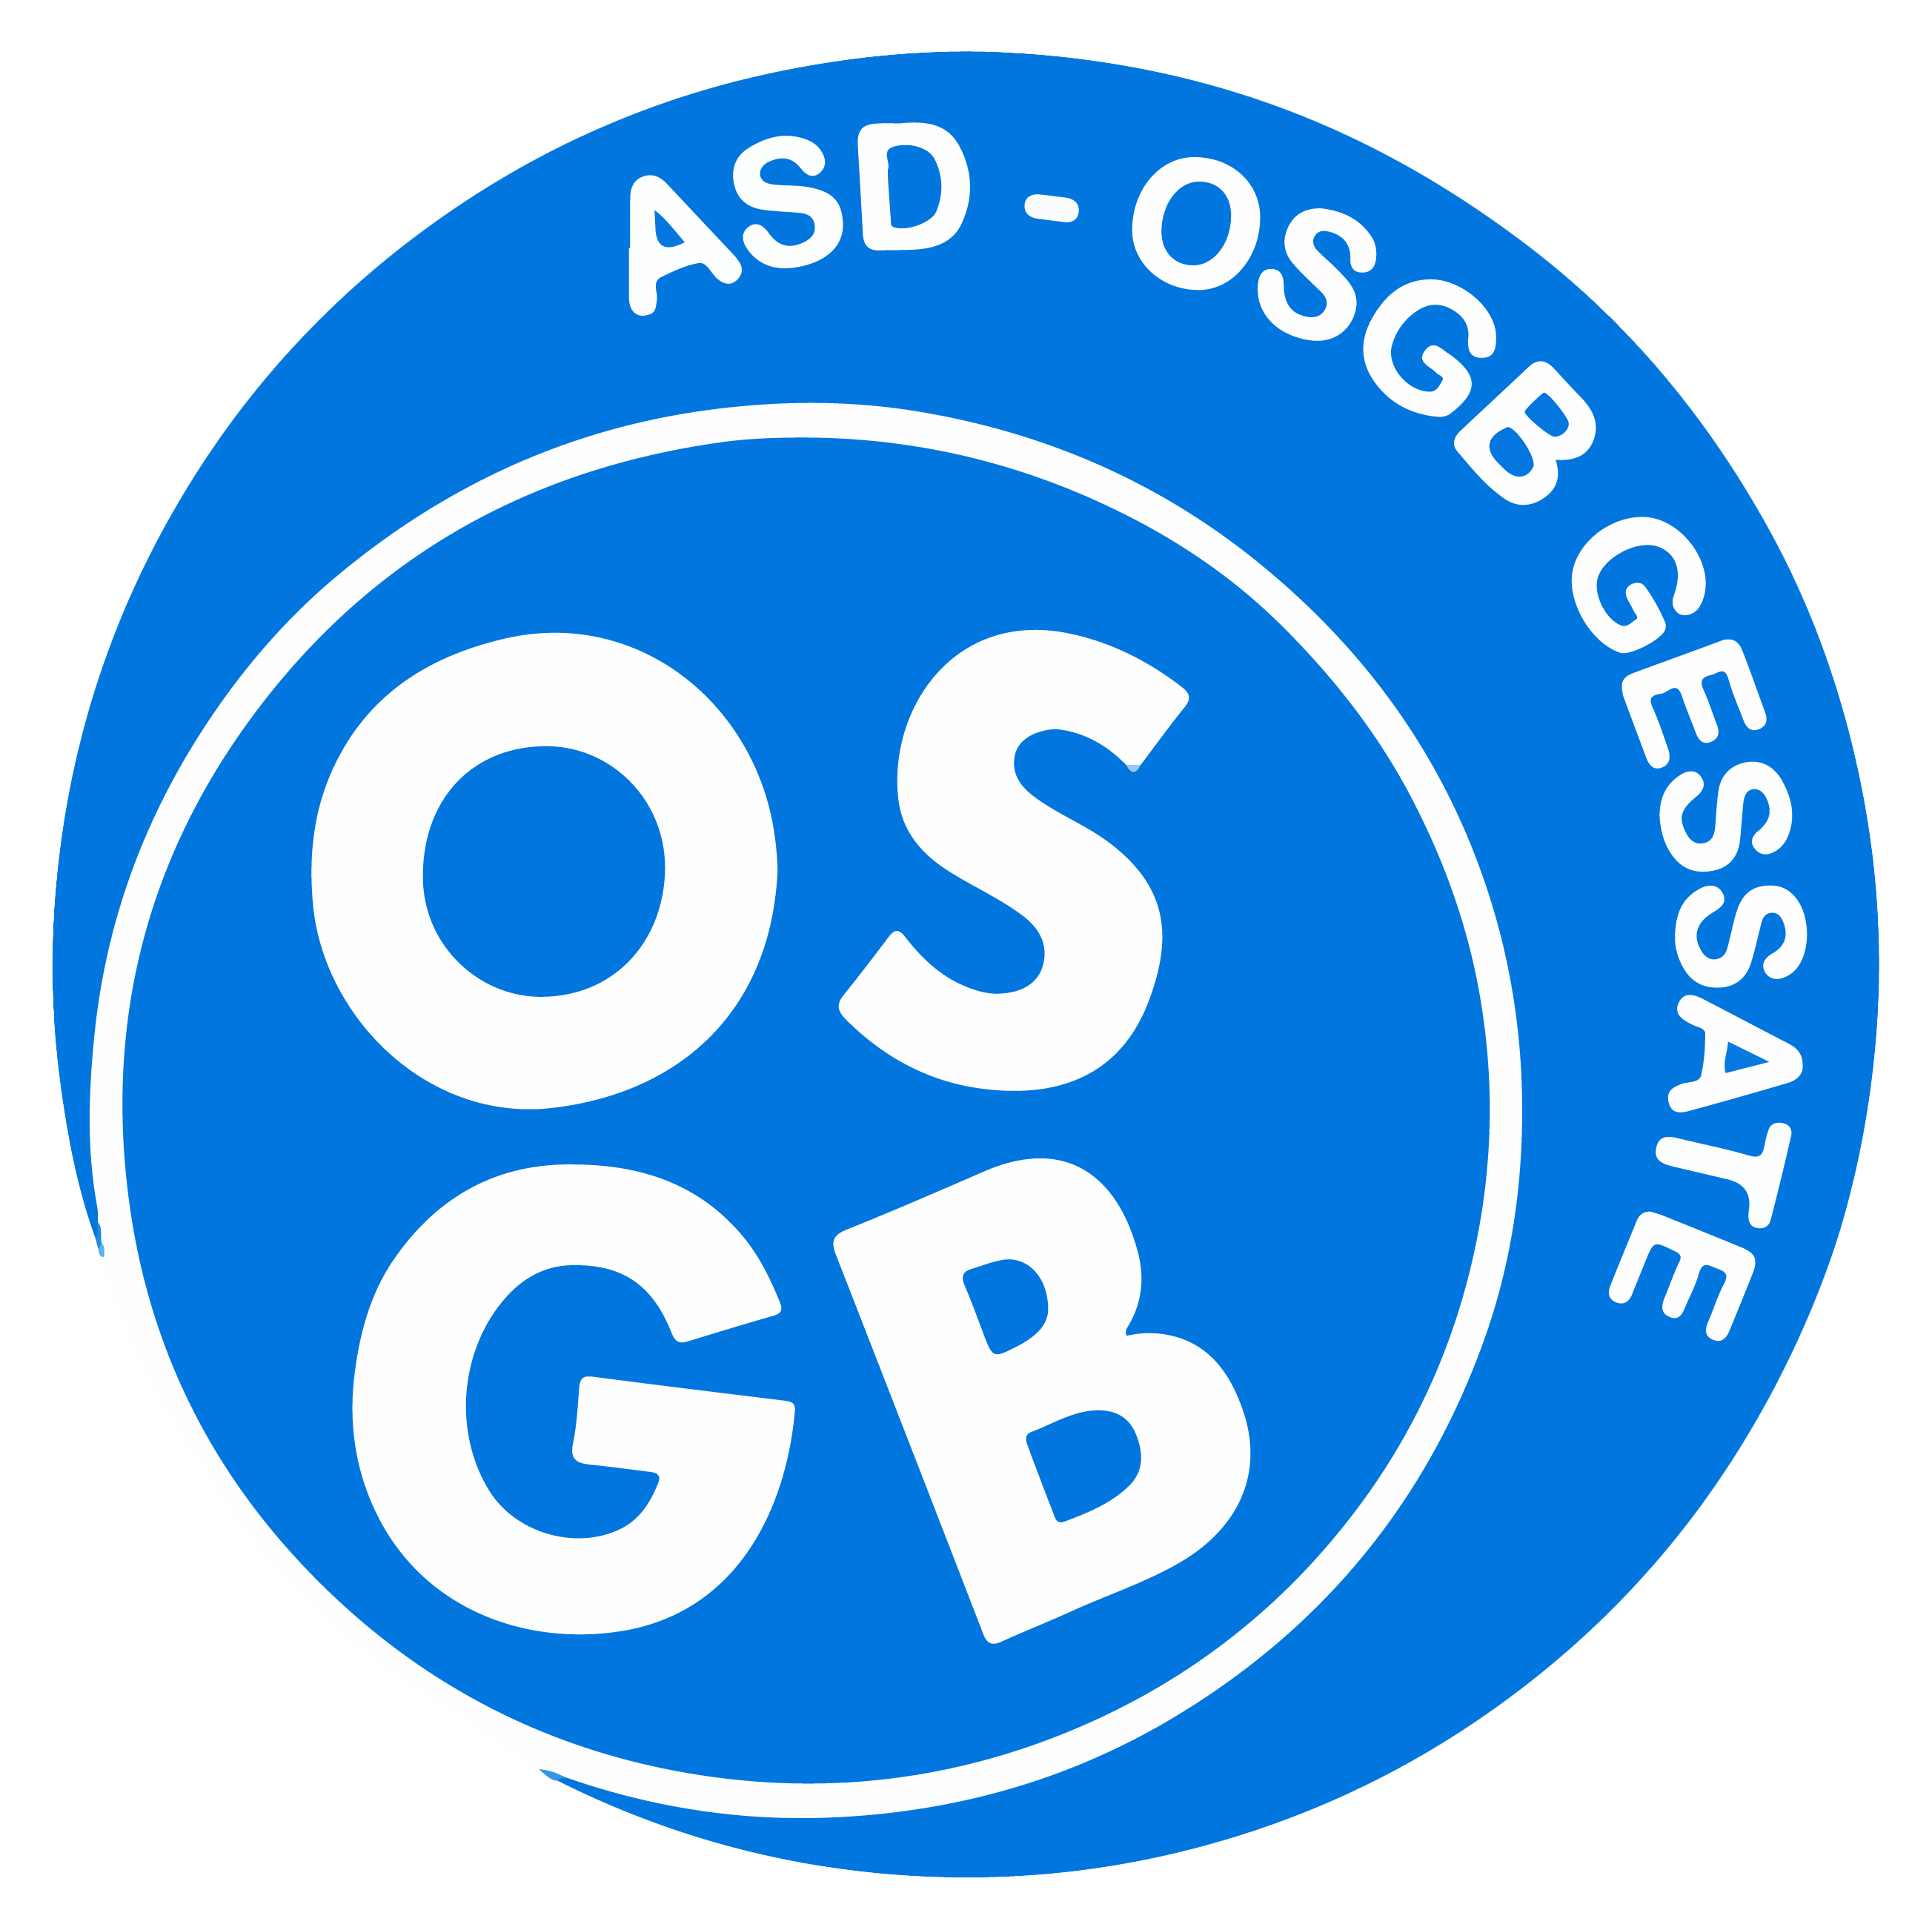 OSGB Gessate